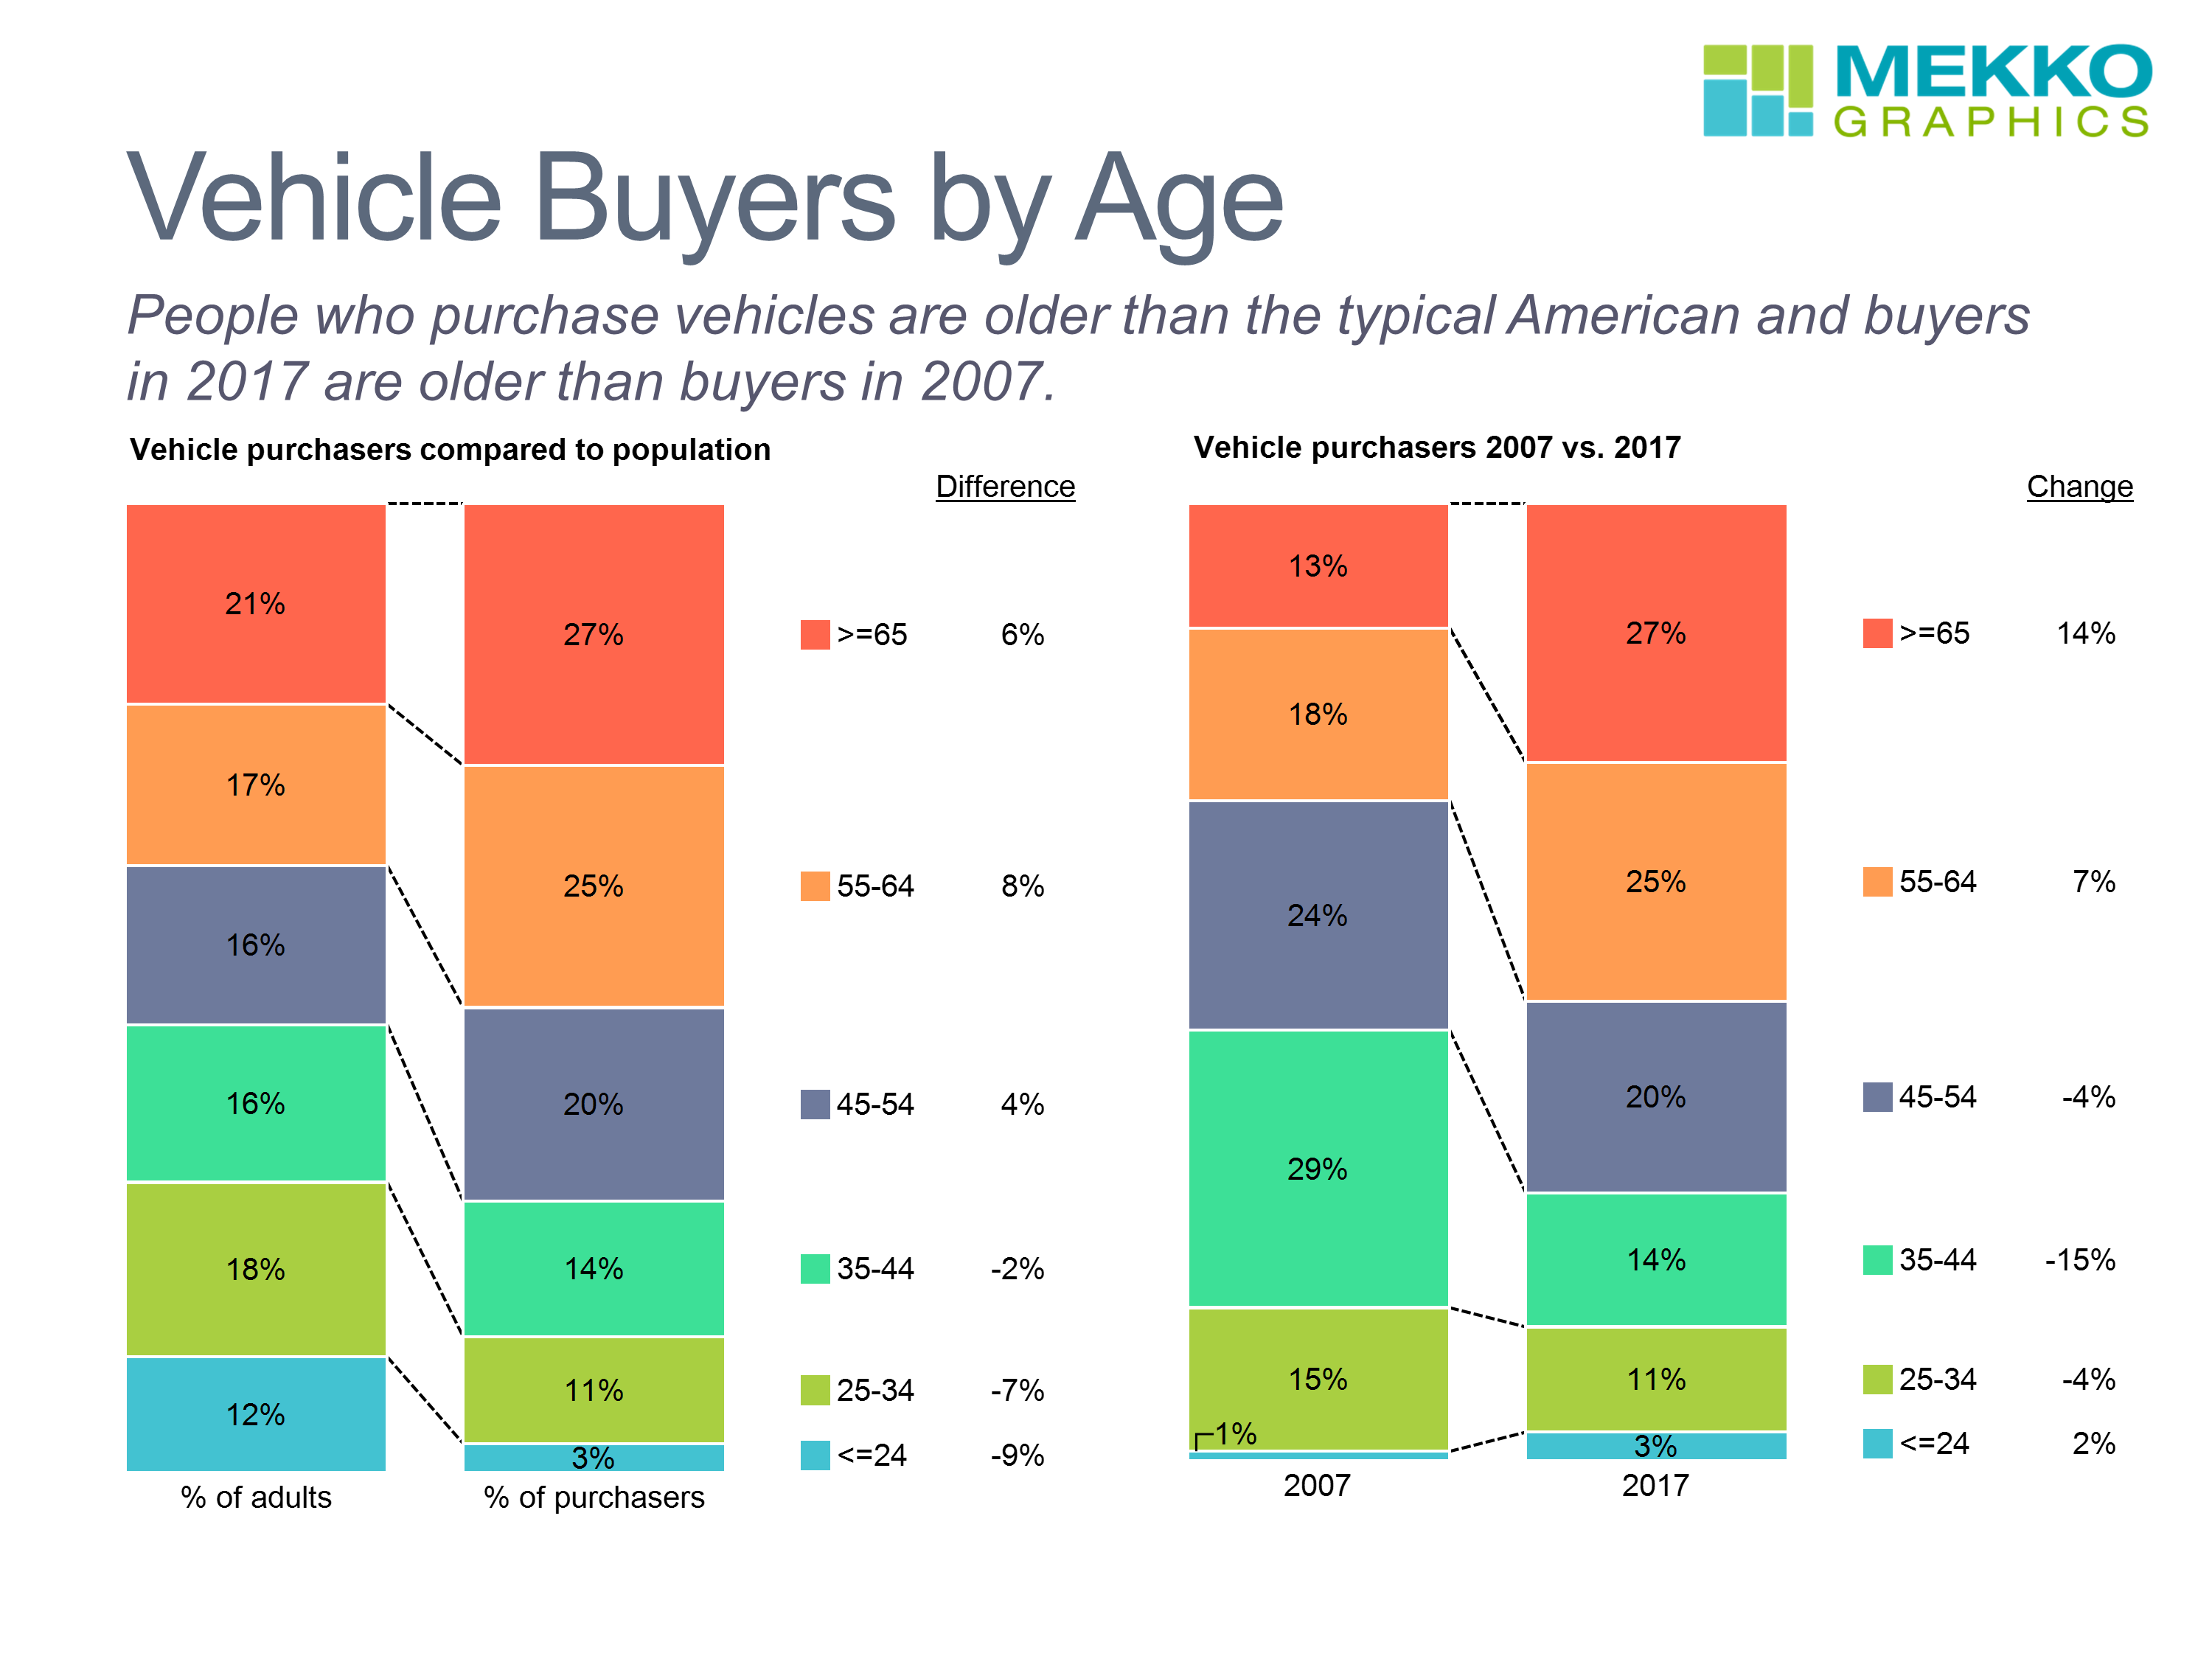 Vehicle Buyers by Age Mekko Graphics